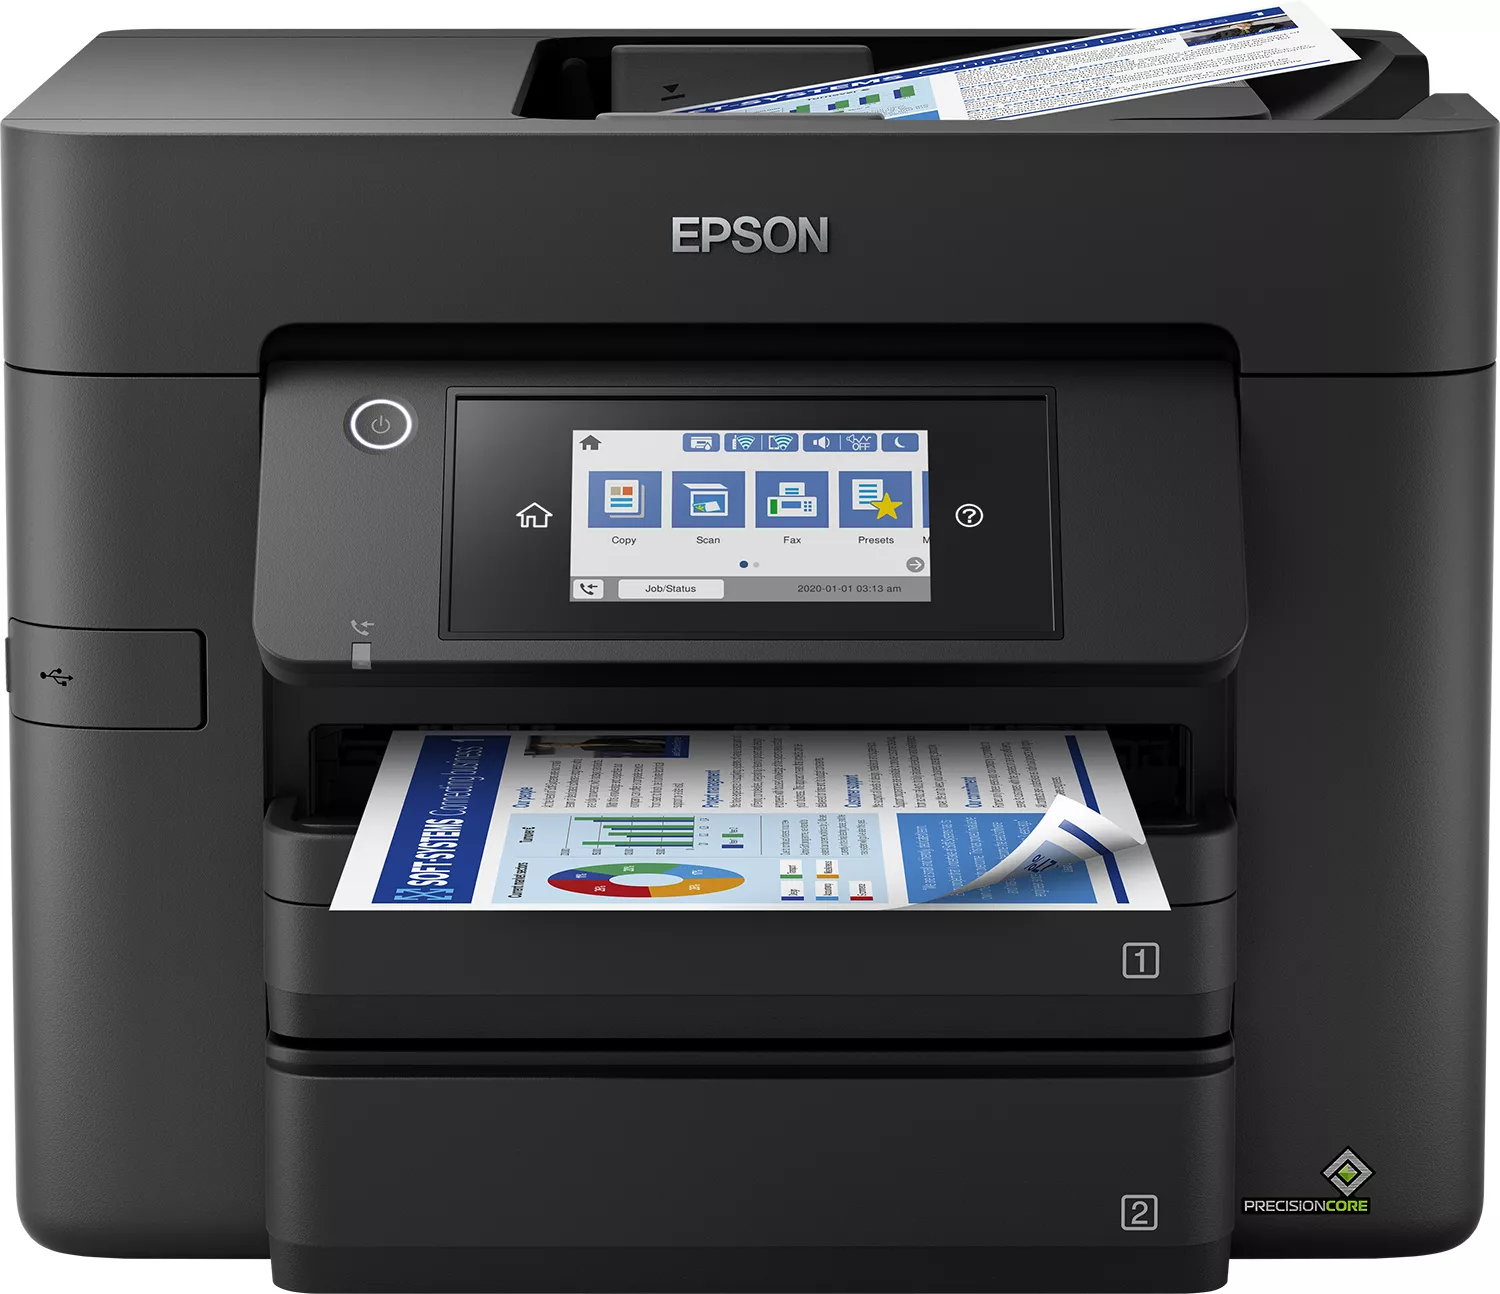 Achat EPSON WorkForce Pro WF-4830DTWF MFP colour ink-jet A4 et autres produits de la marque Epson